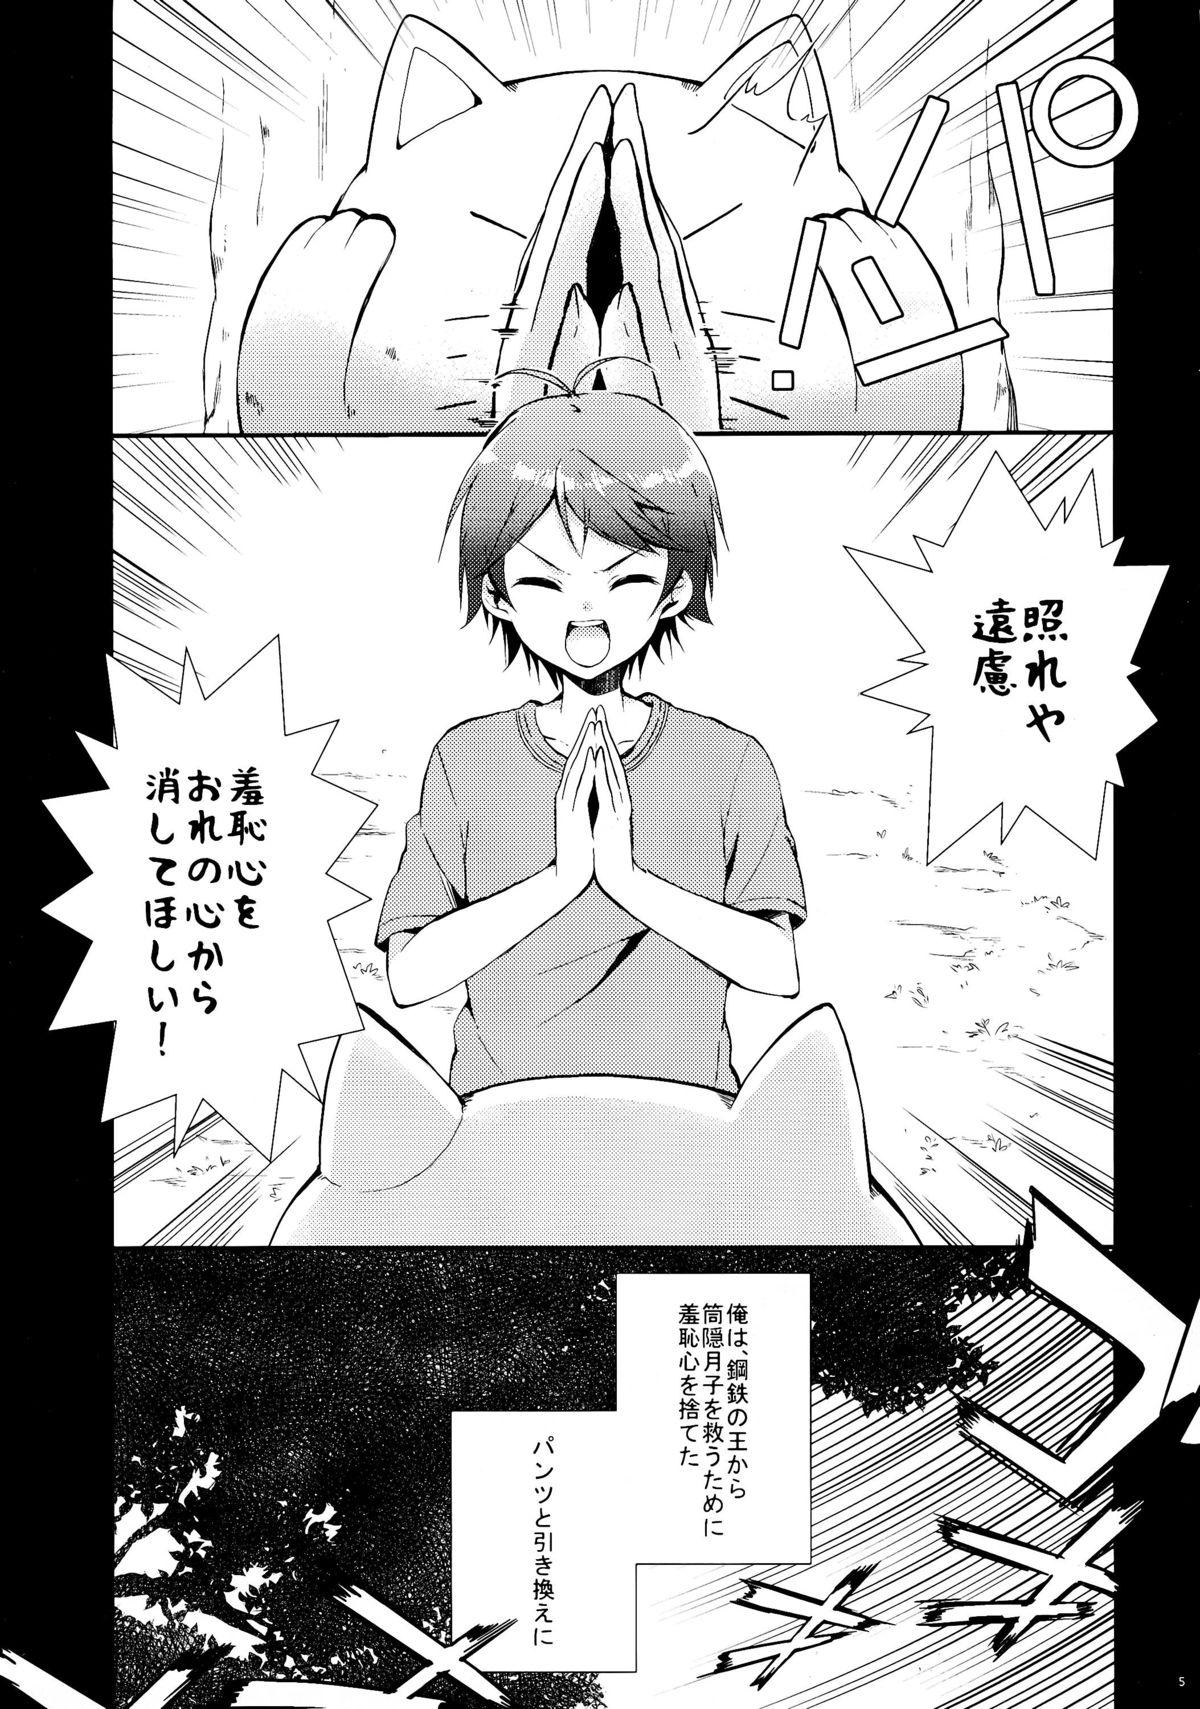 Gilf Hentai Ouji to Hazukashii Neko. - Hentai ouji to warawanai neko Chichona - Page 5